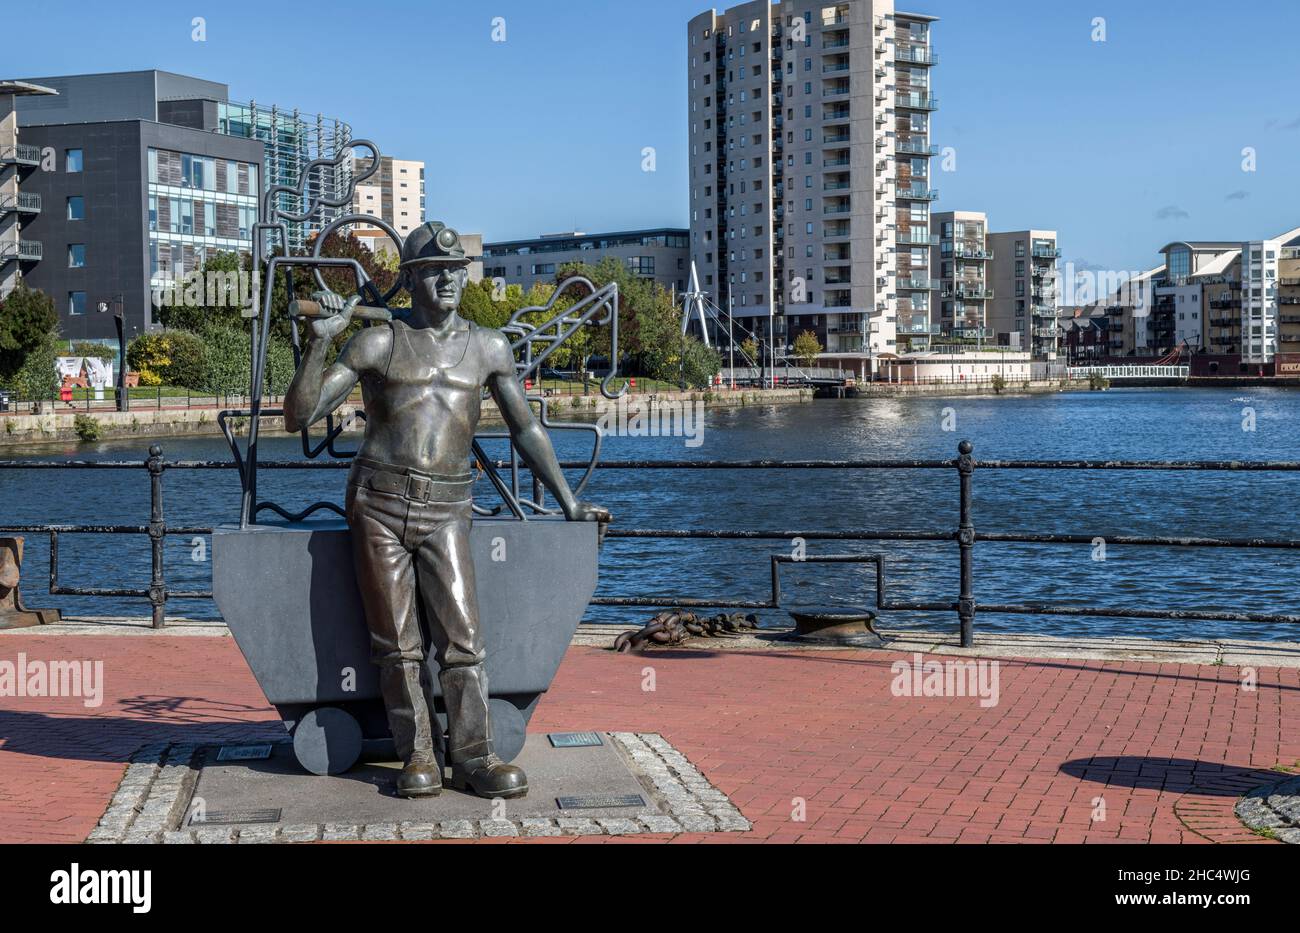 La statue d'un mineur de charbon gallois dans la baie de Cardiff, à Roath Basin.Cardiff était autrefois le plus grand exportateur de charbon au monde et le thui sert de remin Banque D'Images